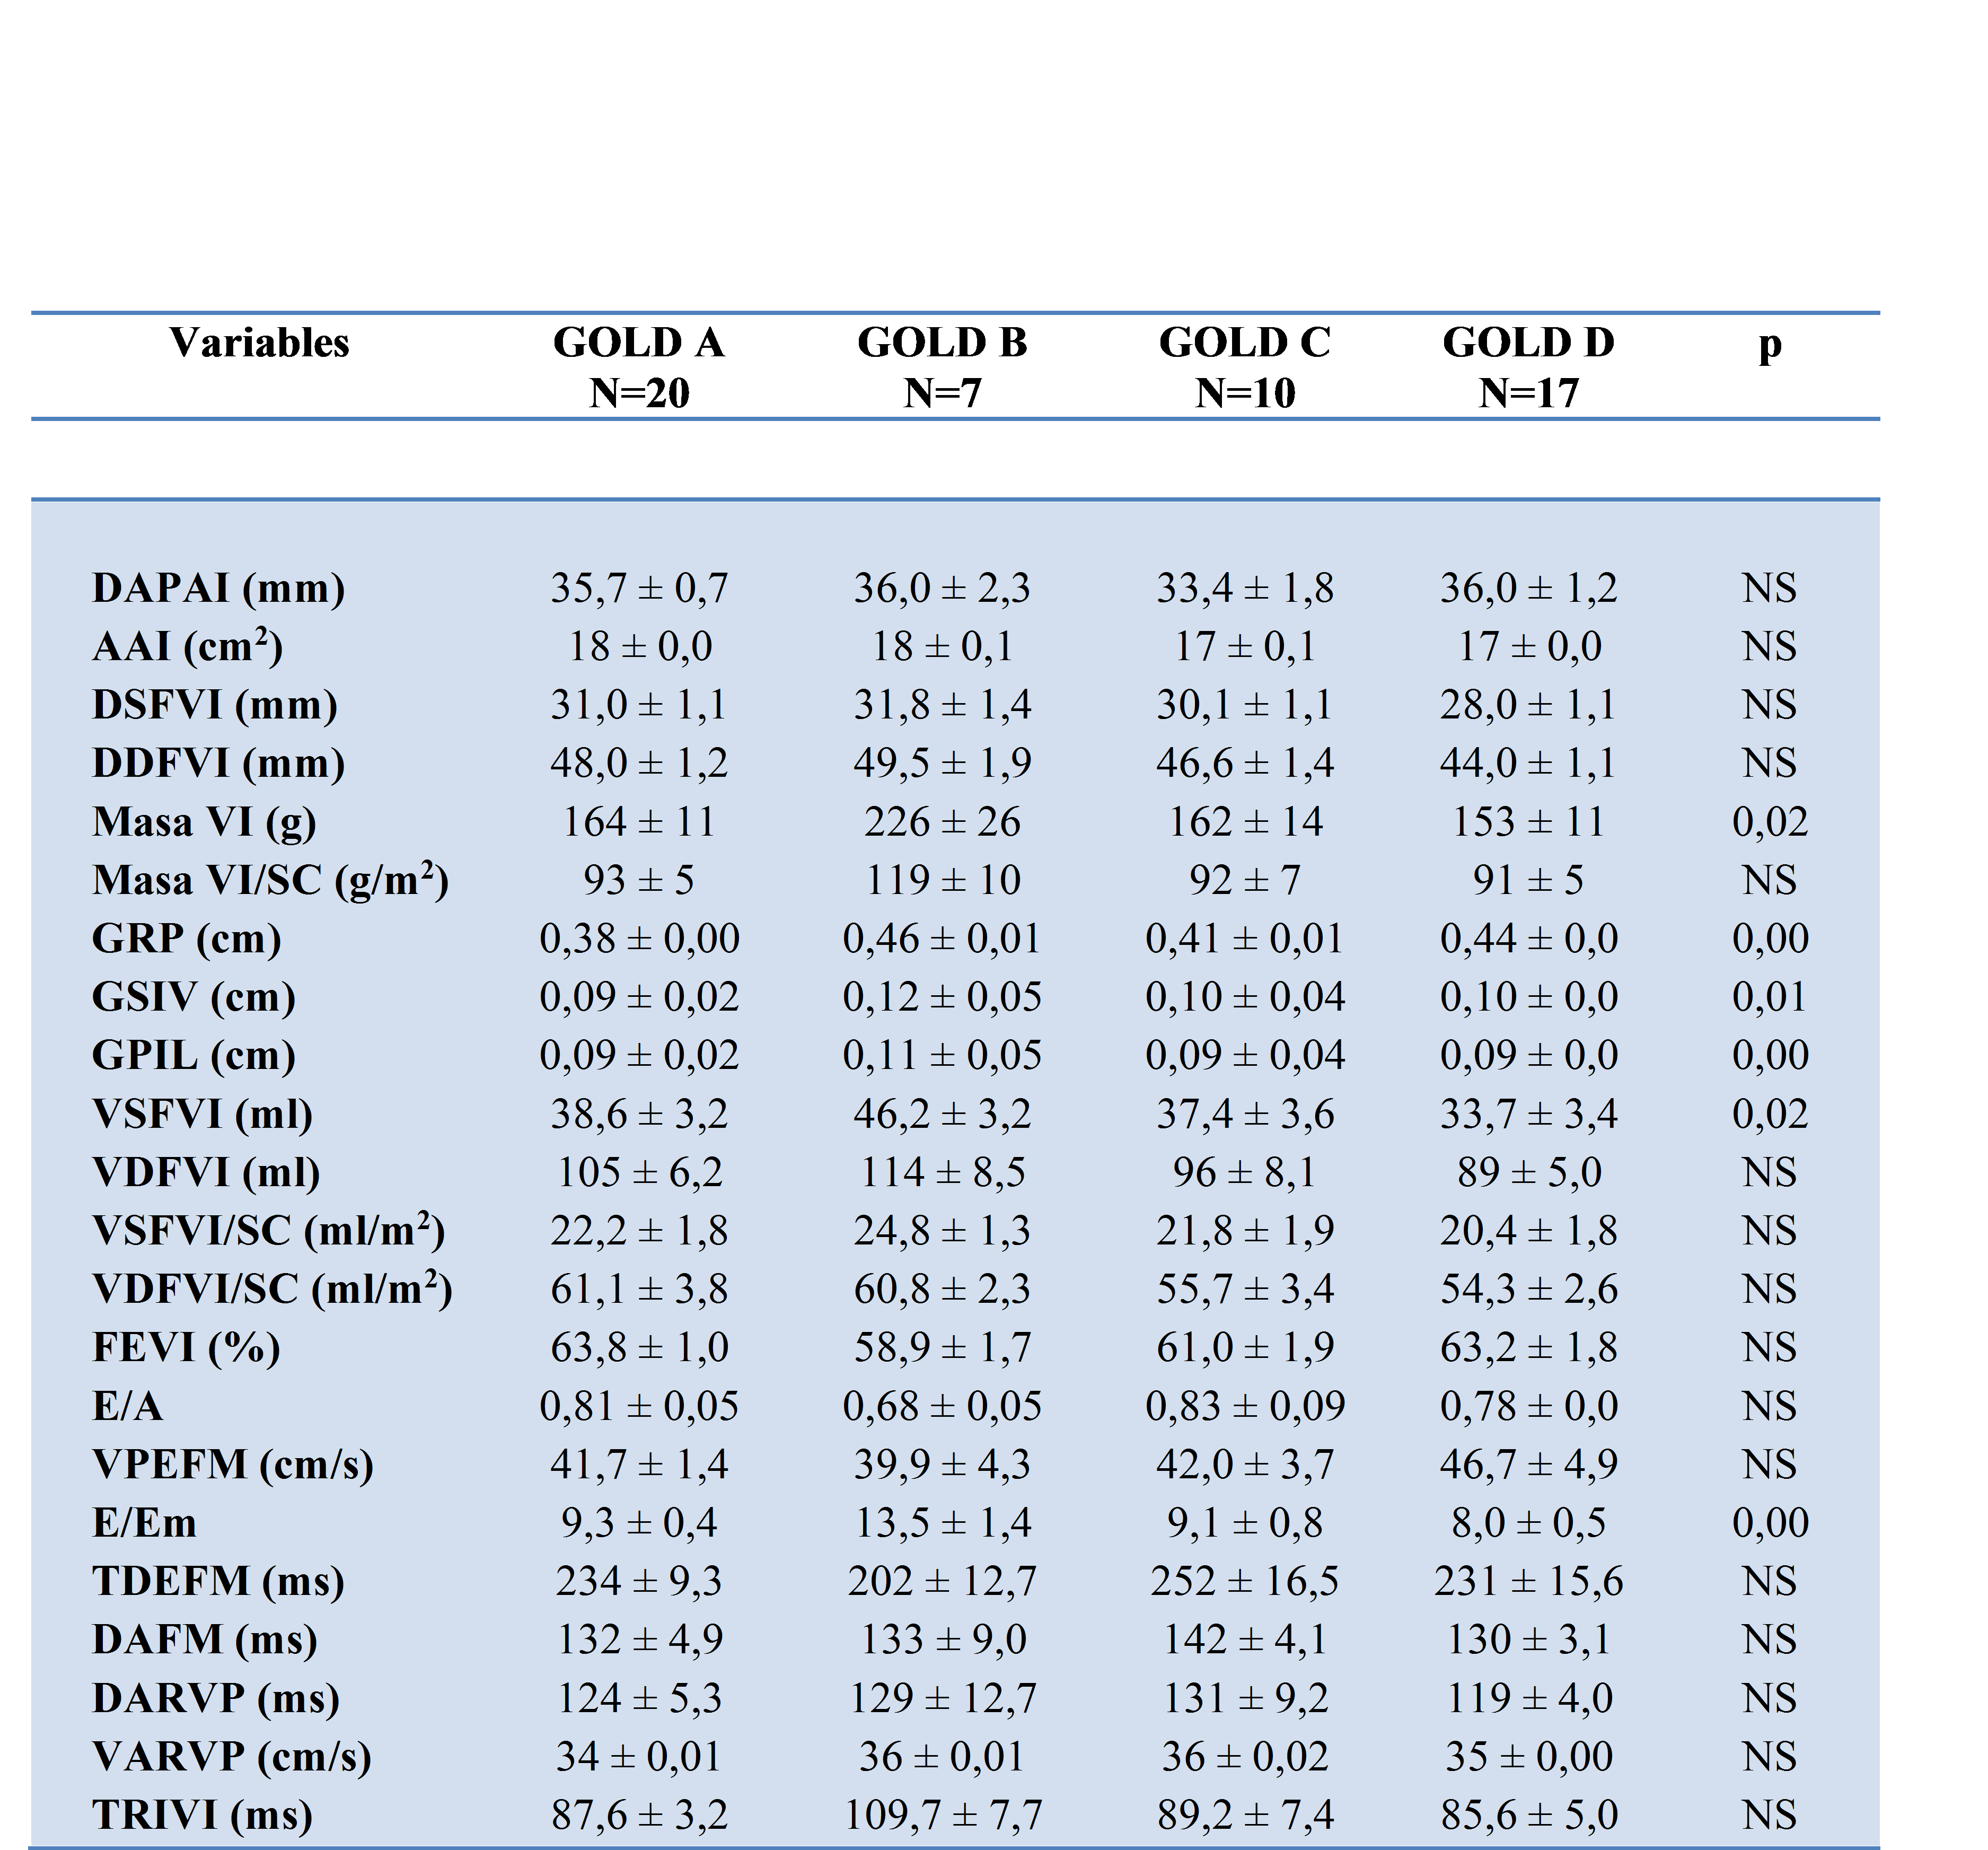 

Tabla
3.
Parámetros ecocardiográficos de tamaño,función,y masa de pacientes  masculinos participantes






